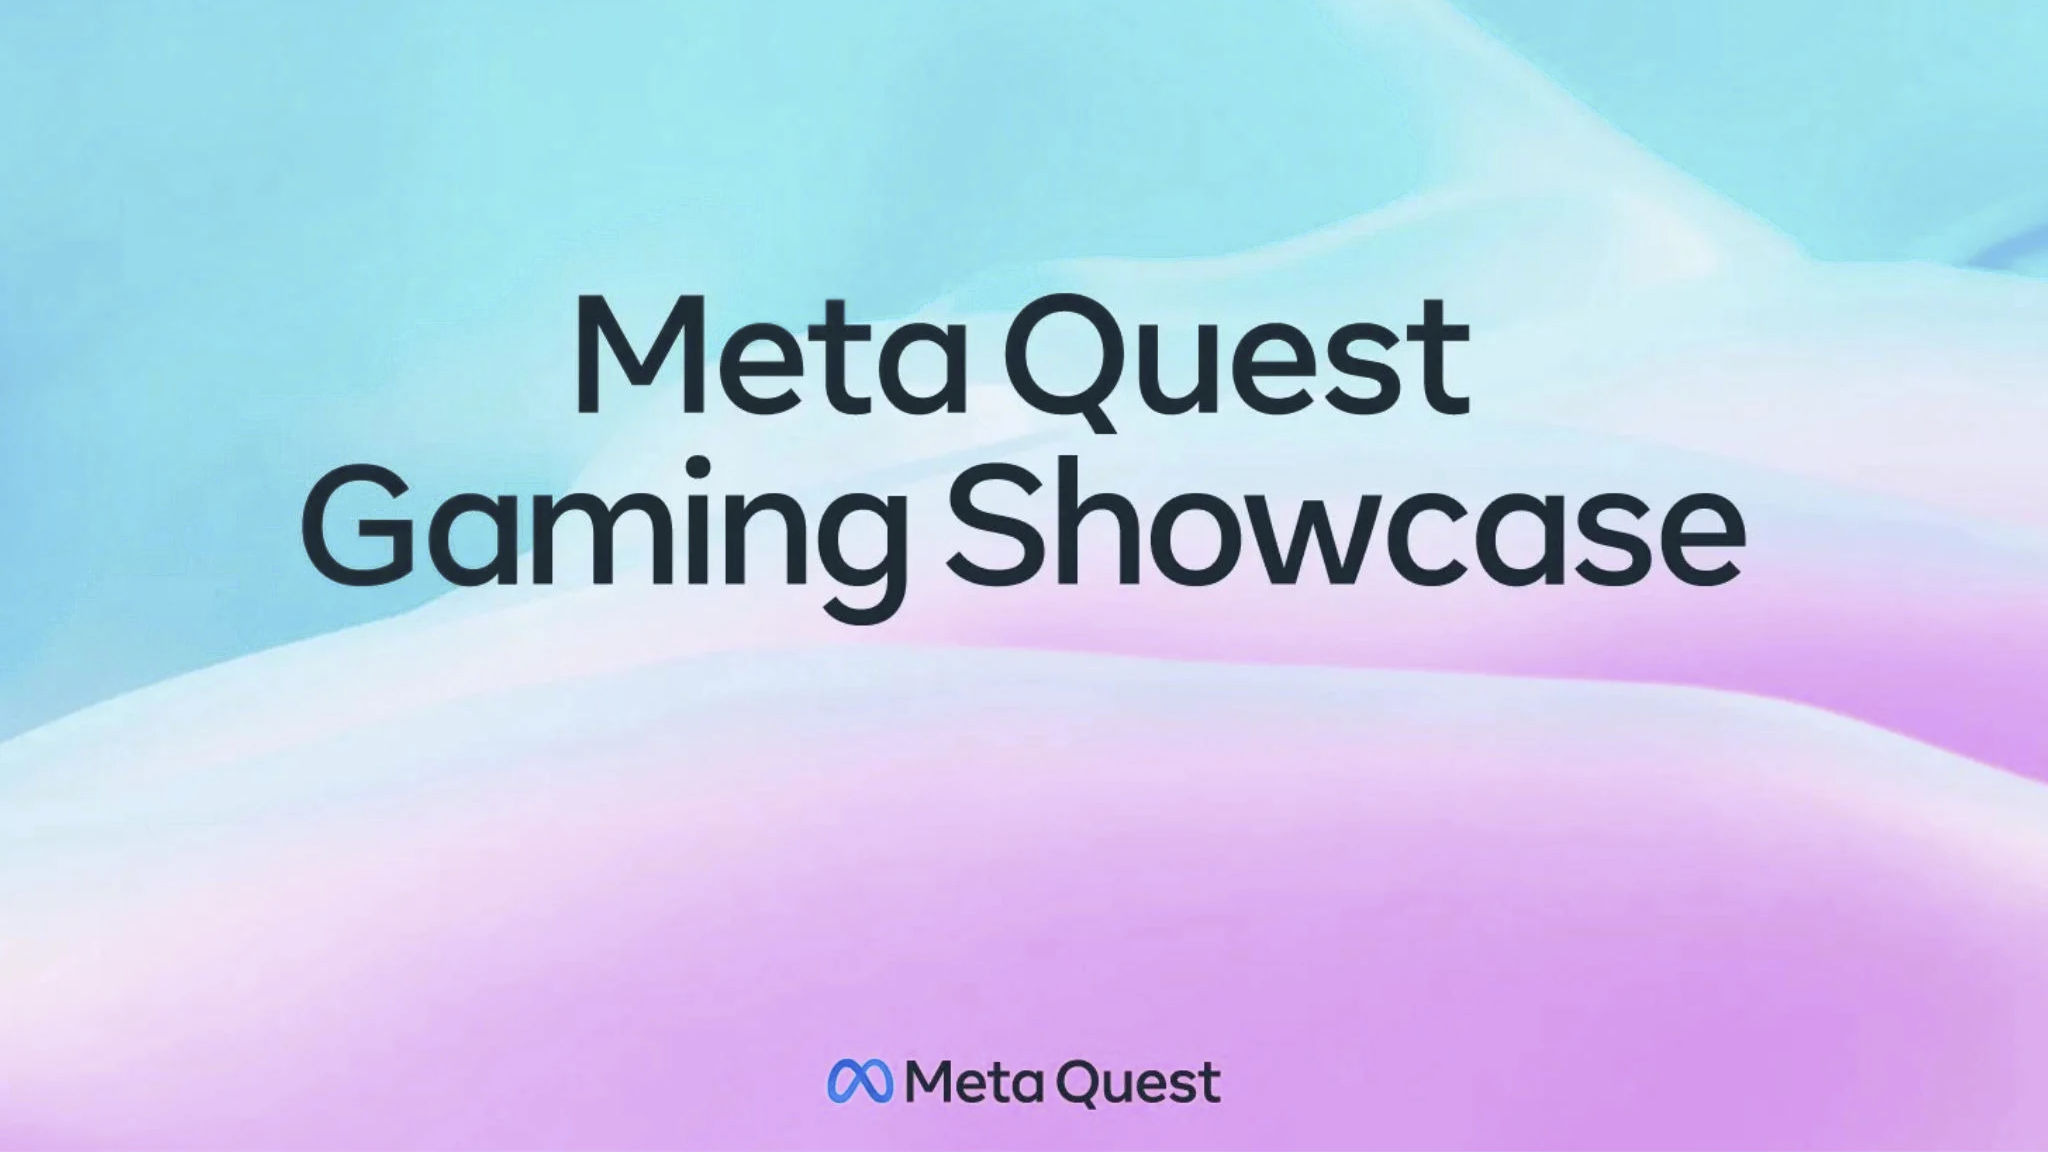 Meta Quest Gaming Showcase 2022: Loạt game Hot chuẩn bị đổ bộ trên Quest 2 từ nay đến 2023